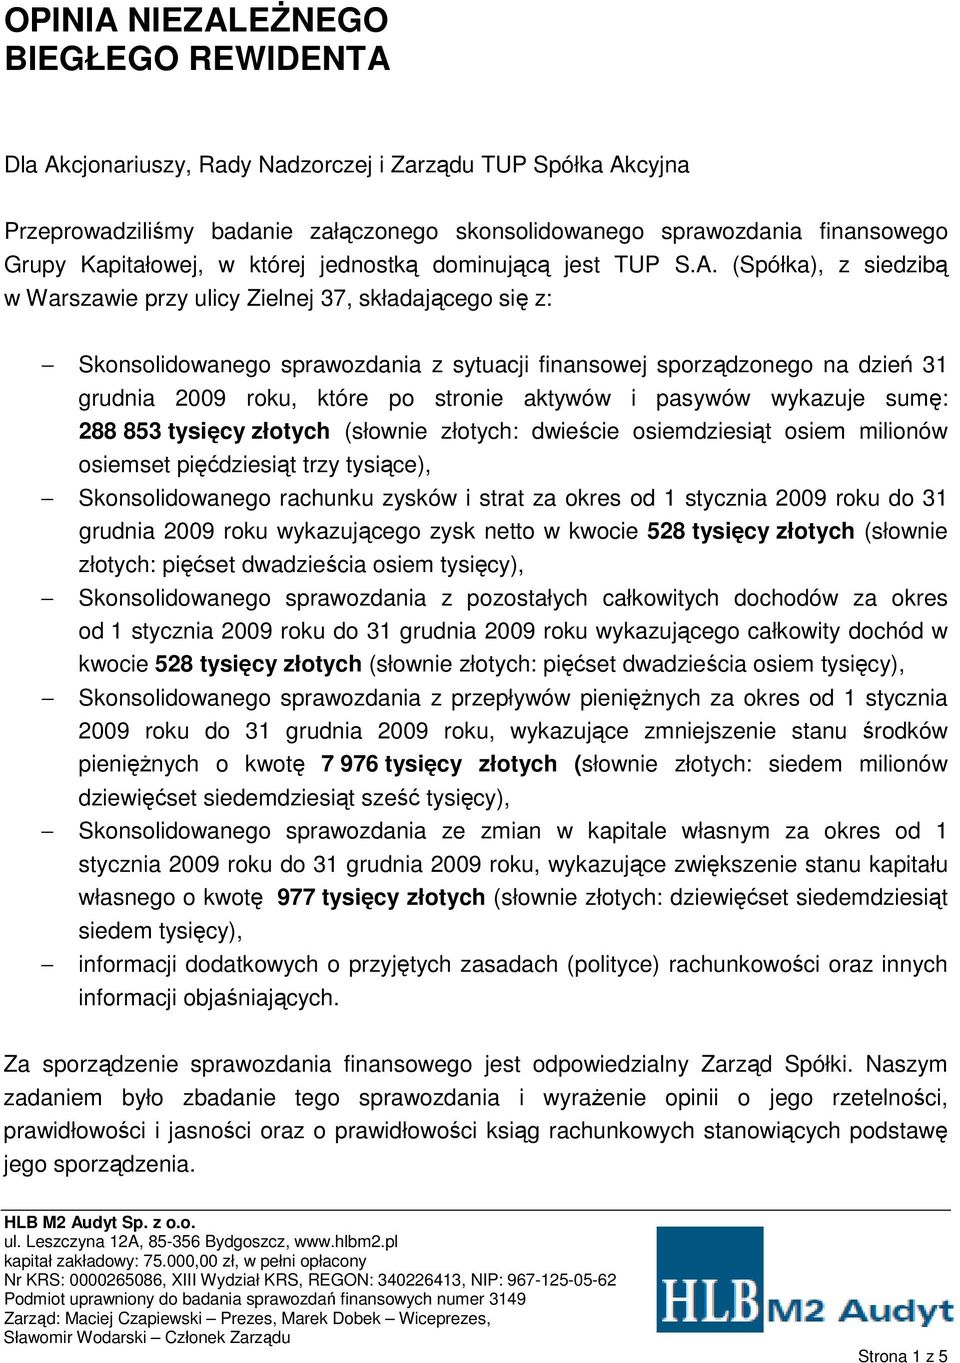 (Spółka), z siedzibą w Warszawie przy ulicy Zielnej 37, składającego się z: Skonsolidowanego sprawozdania z sytuacji finansowej sporządzonego na dzień 31 grudnia 2009 roku, które po stronie aktywów i